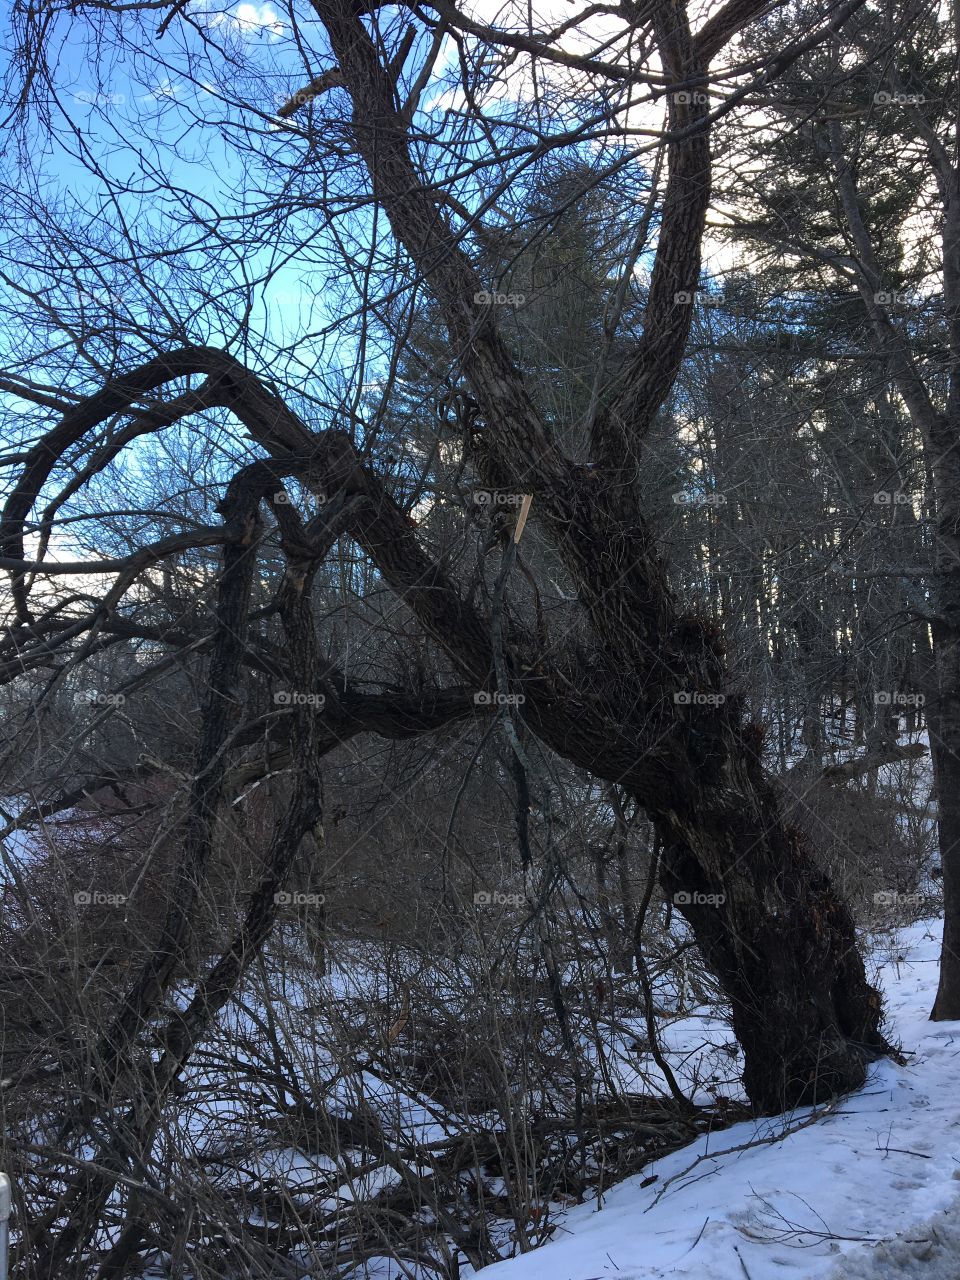 Old tree on path